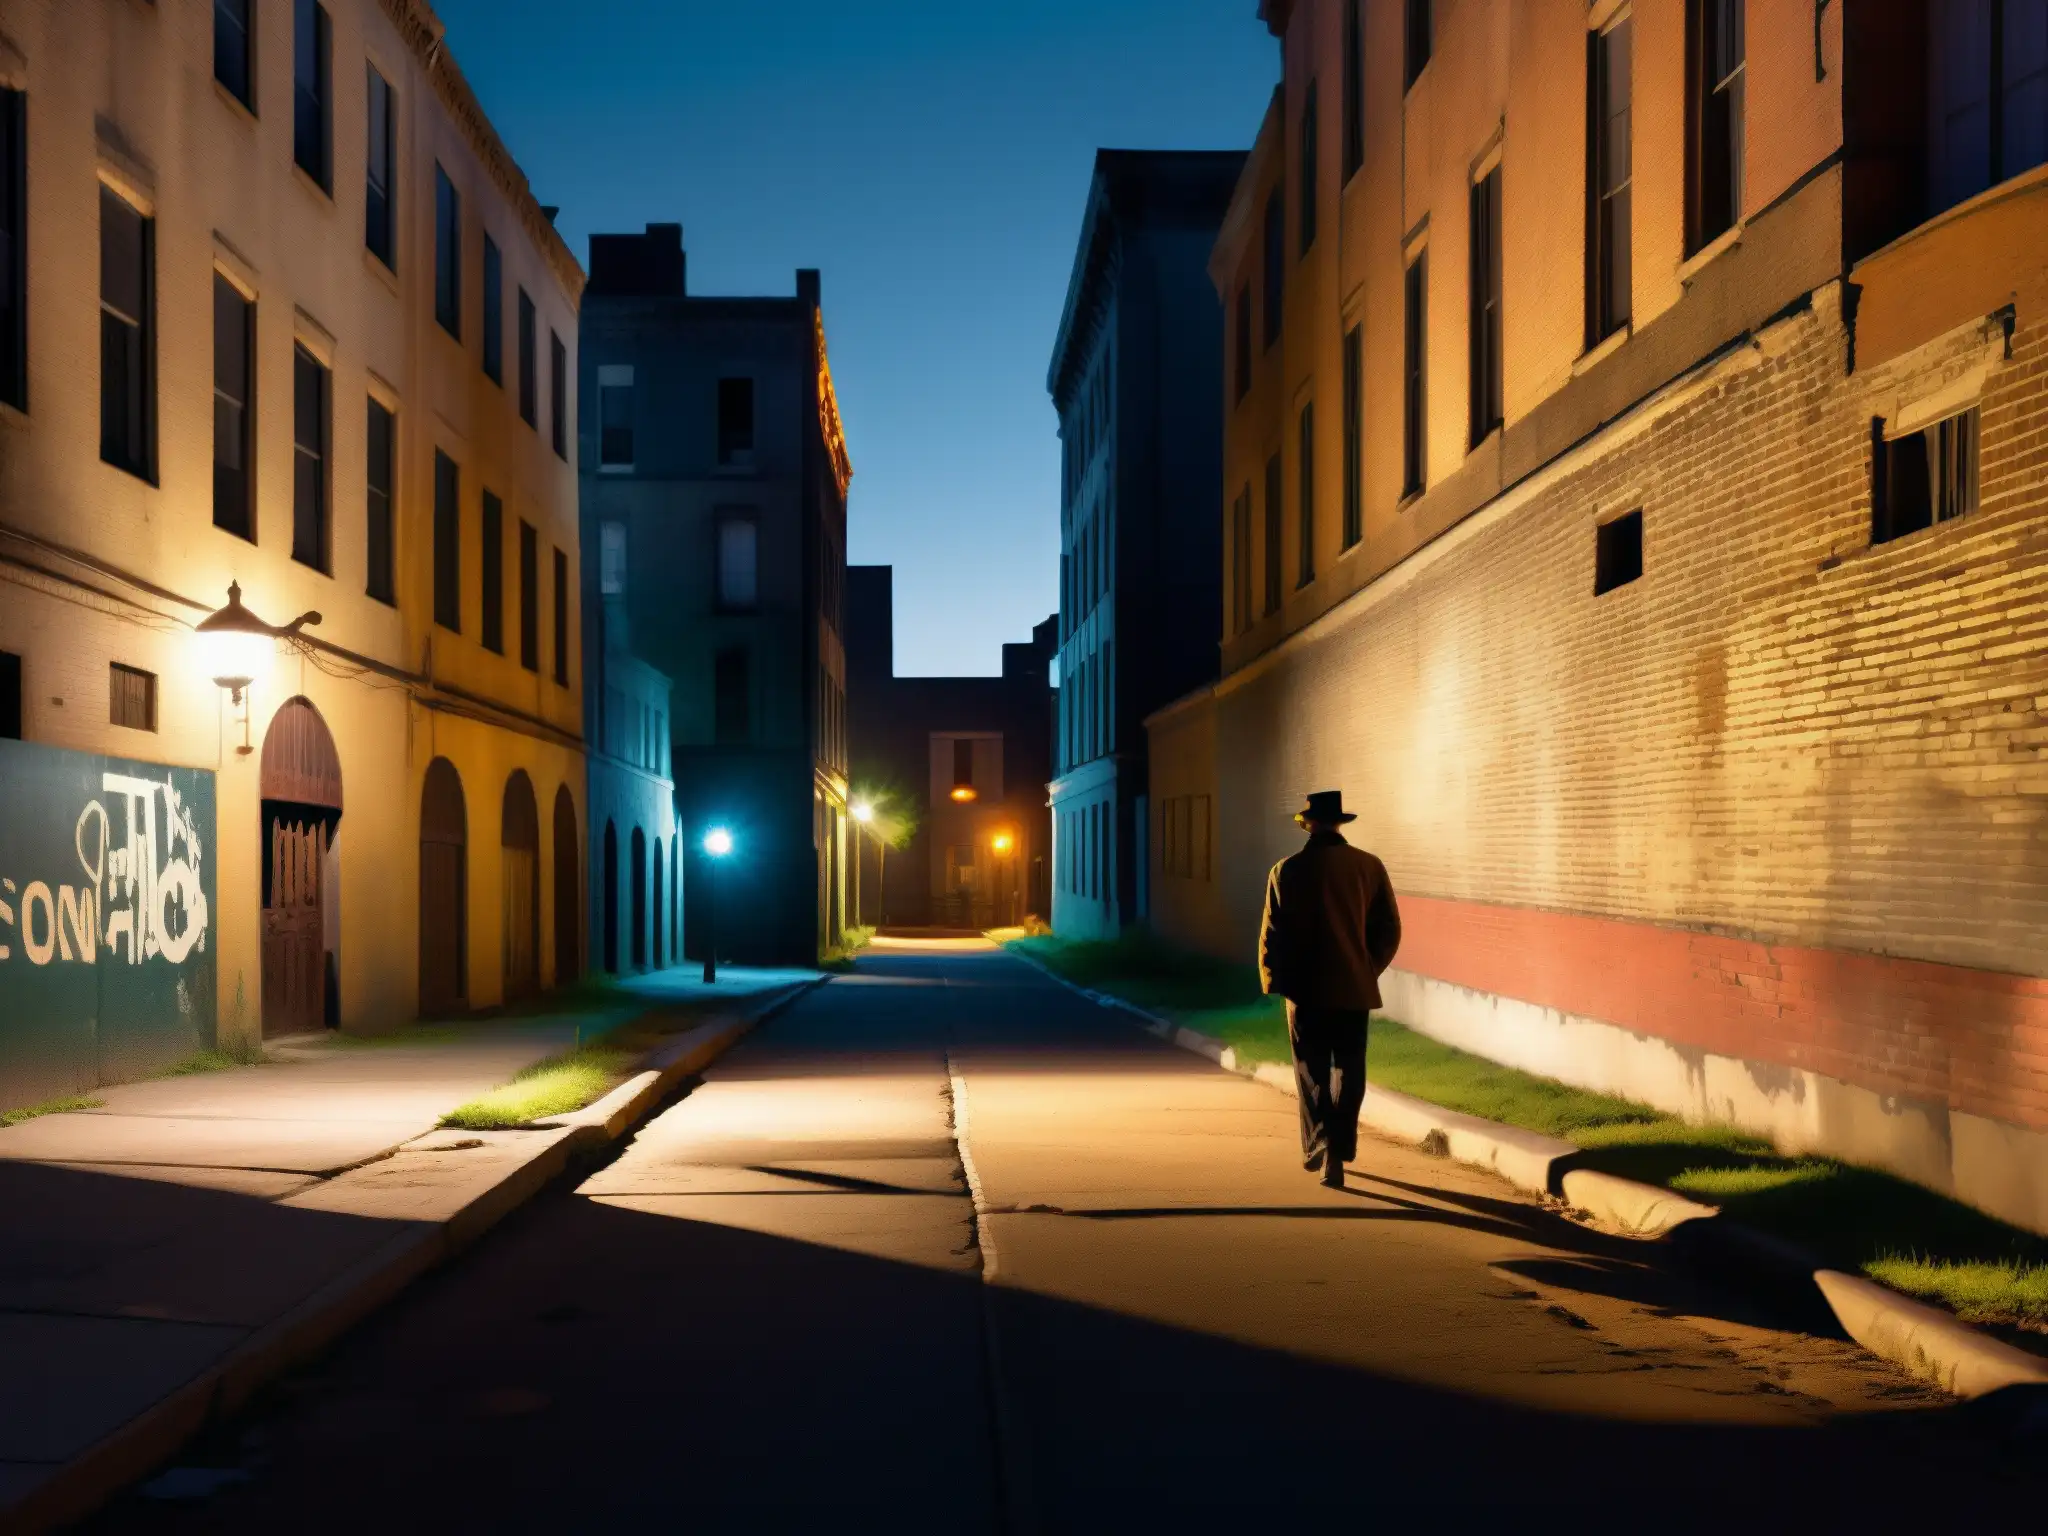 Figura misteriosa camina por calle urbana desierta de noche, entre edificios abandonados y graffiti